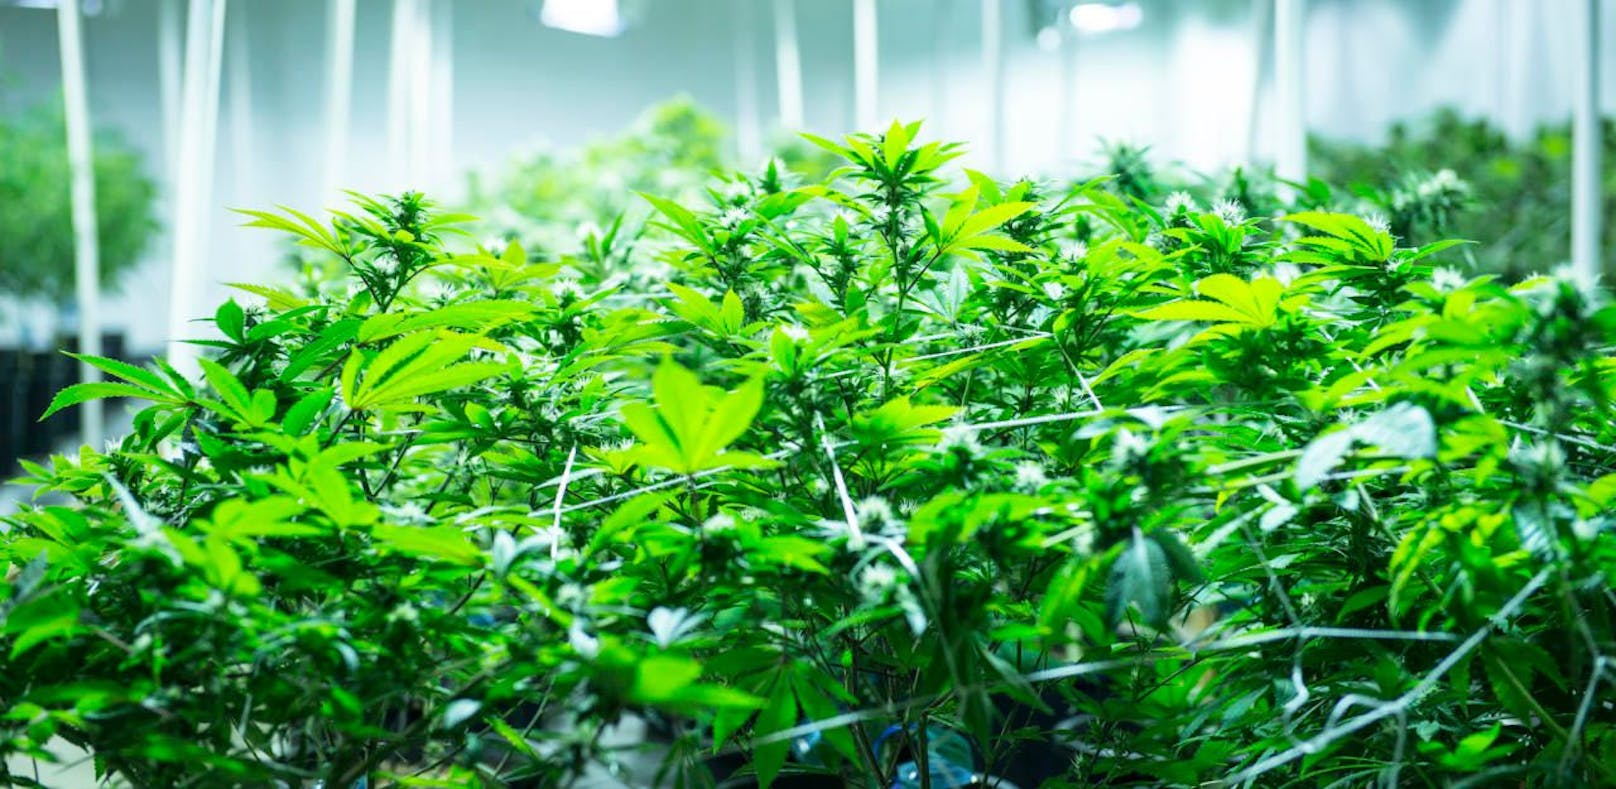 Die Polizei fand in einer Leopoldstädter Wohnung eine Cannabis-Plantage (Symbolbild).